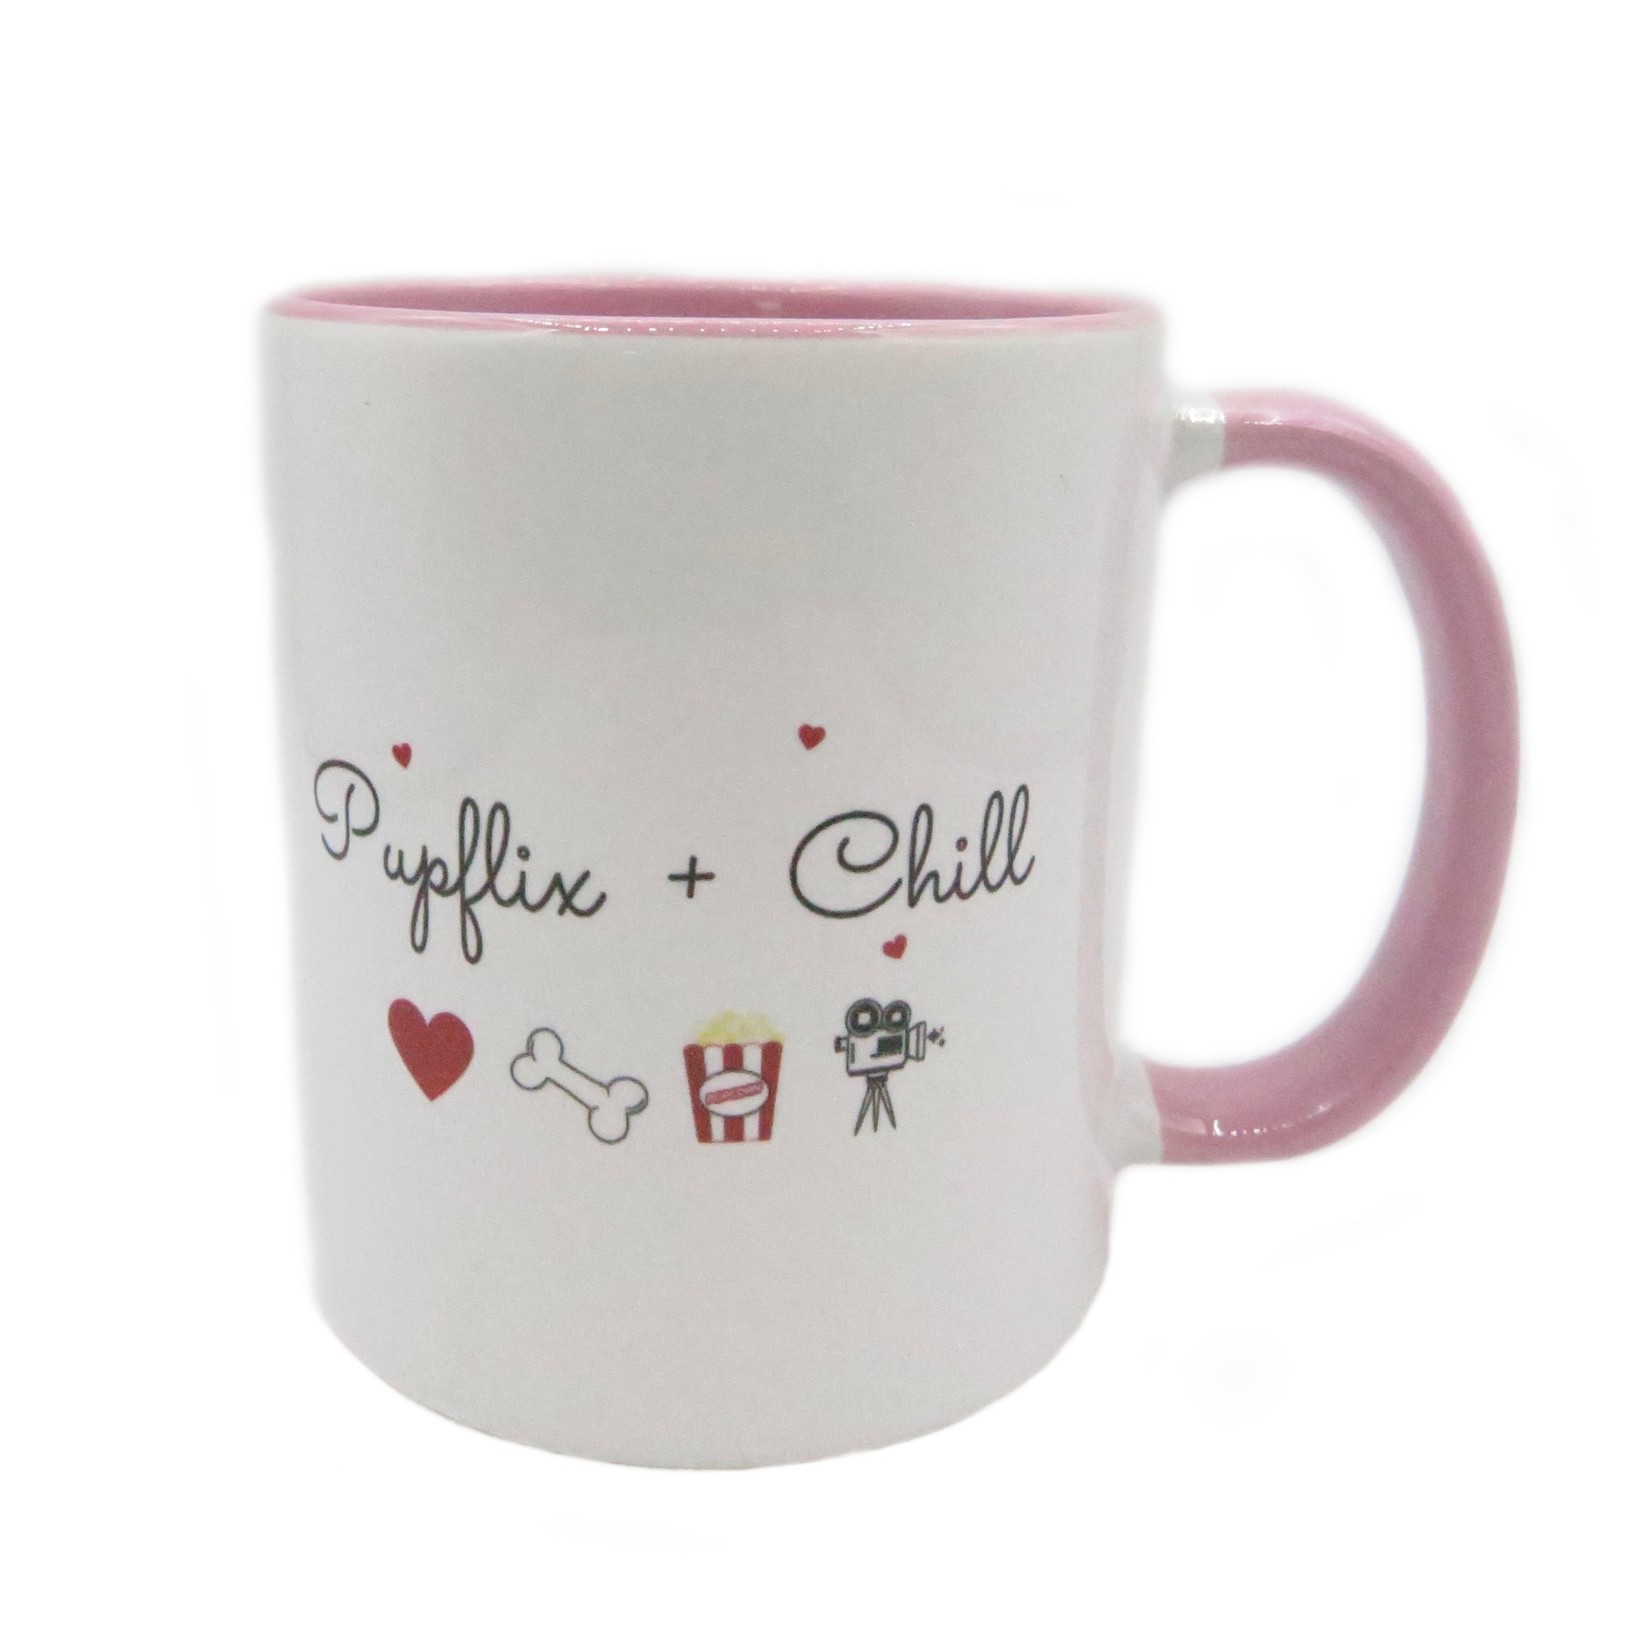 Pupflix & chill pink mug